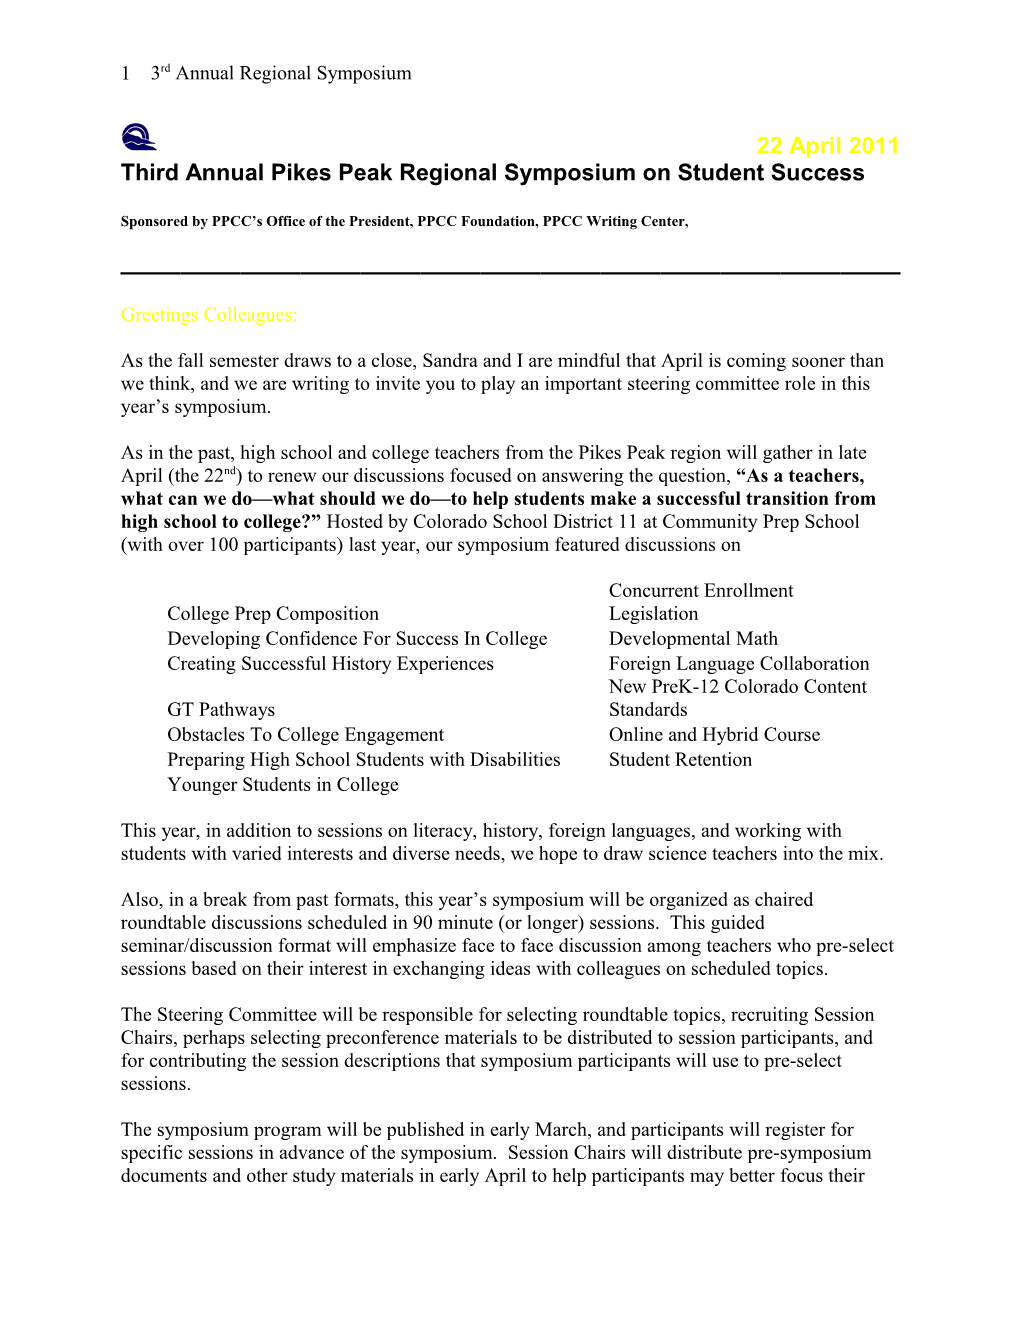 Third Annual Pikes Peak Regional Symposium on Student Success